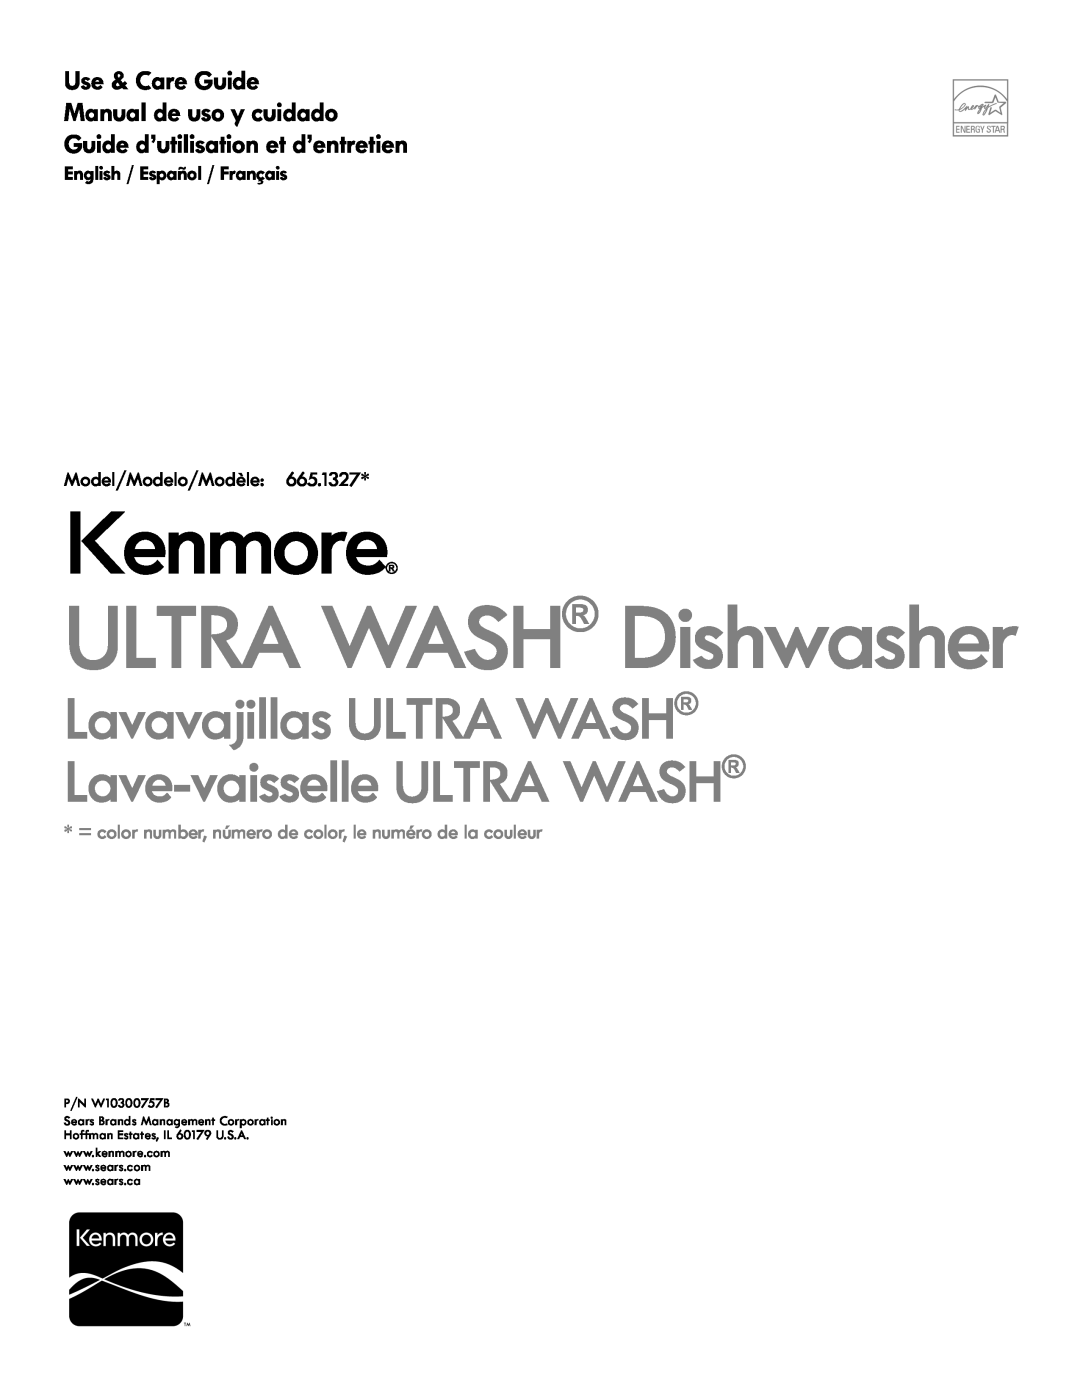 Kenmore 665.1327 manual English / Español / Français Model/Modelo/Modèle, Kenmore, ULTRA WASH Dishwasher, P/N W10300757B 